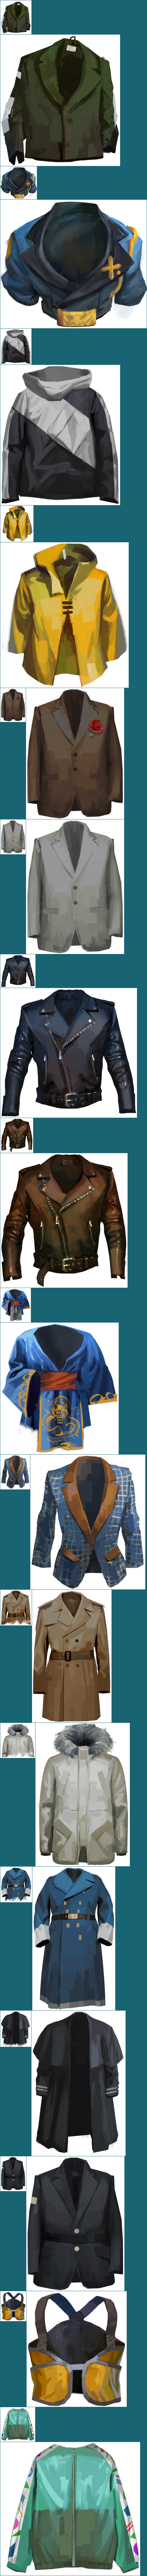 Clothing (Jackets)